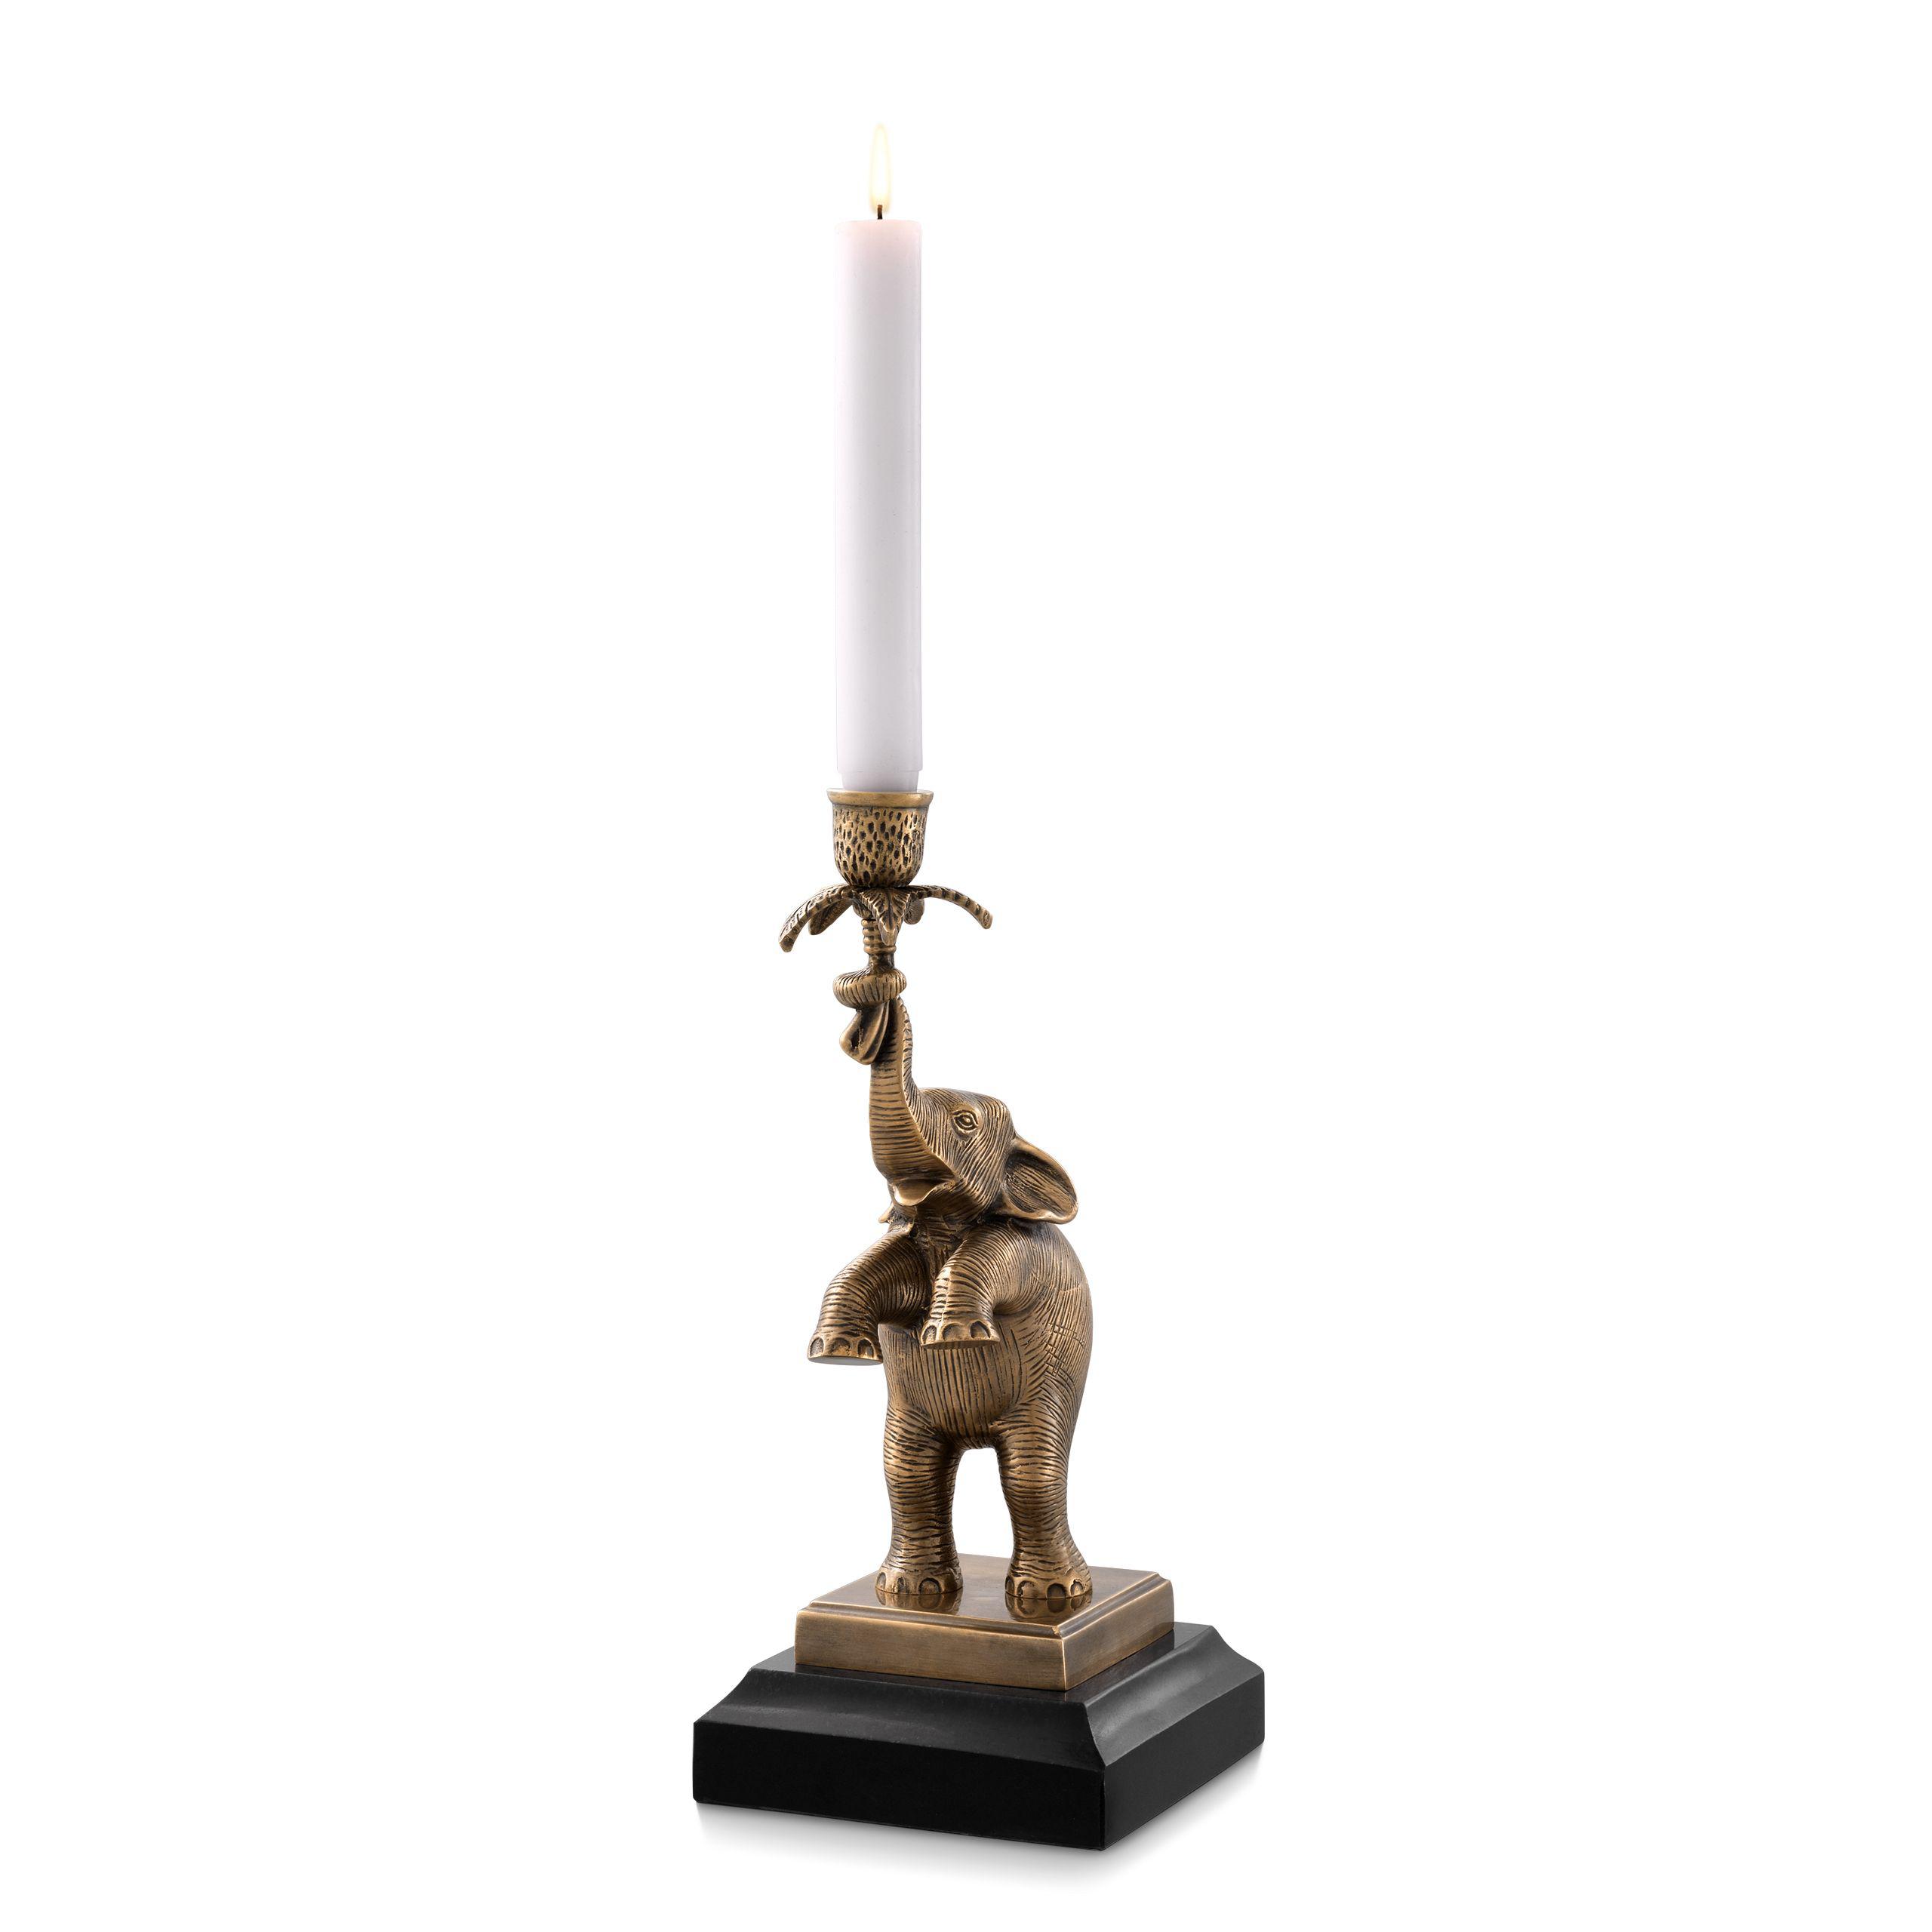 Купить Подсвечник Candle Holder Nairobi в интернет-магазине roooms.ru